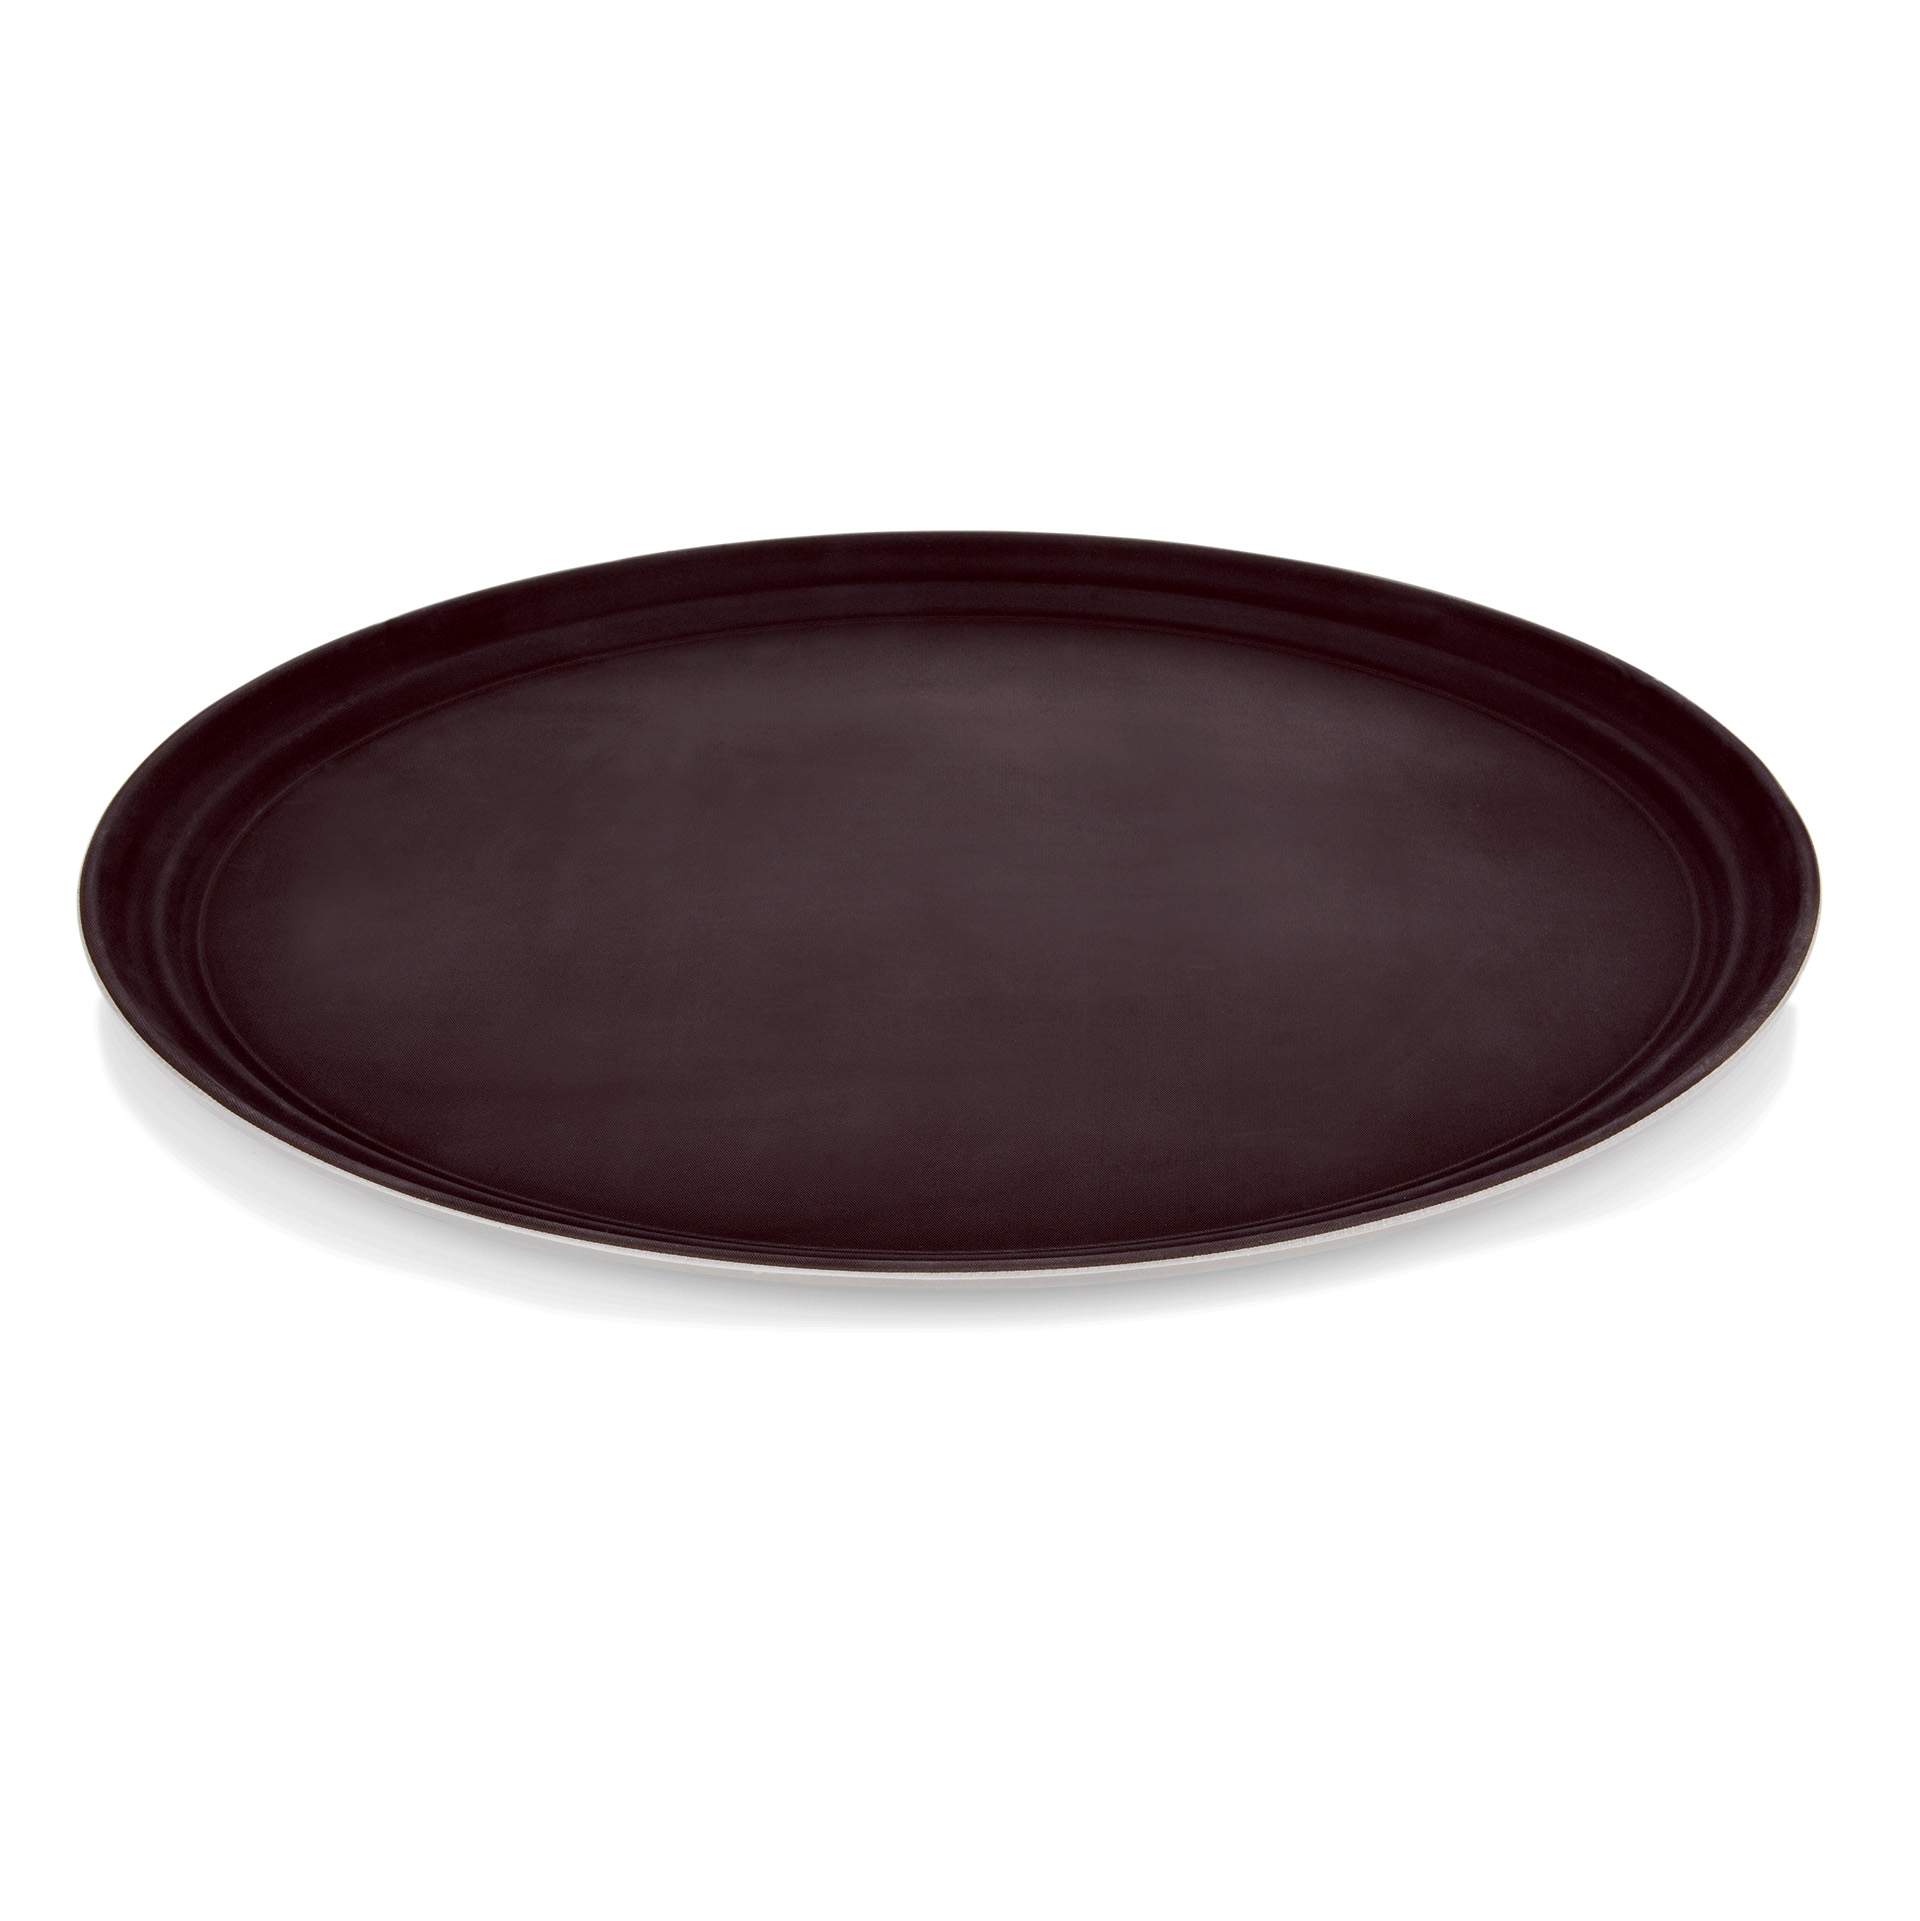 Tablett - rutschhemmend - oval - Abm. 29,0 x 22 cm - Polypropylen - 9209290-A